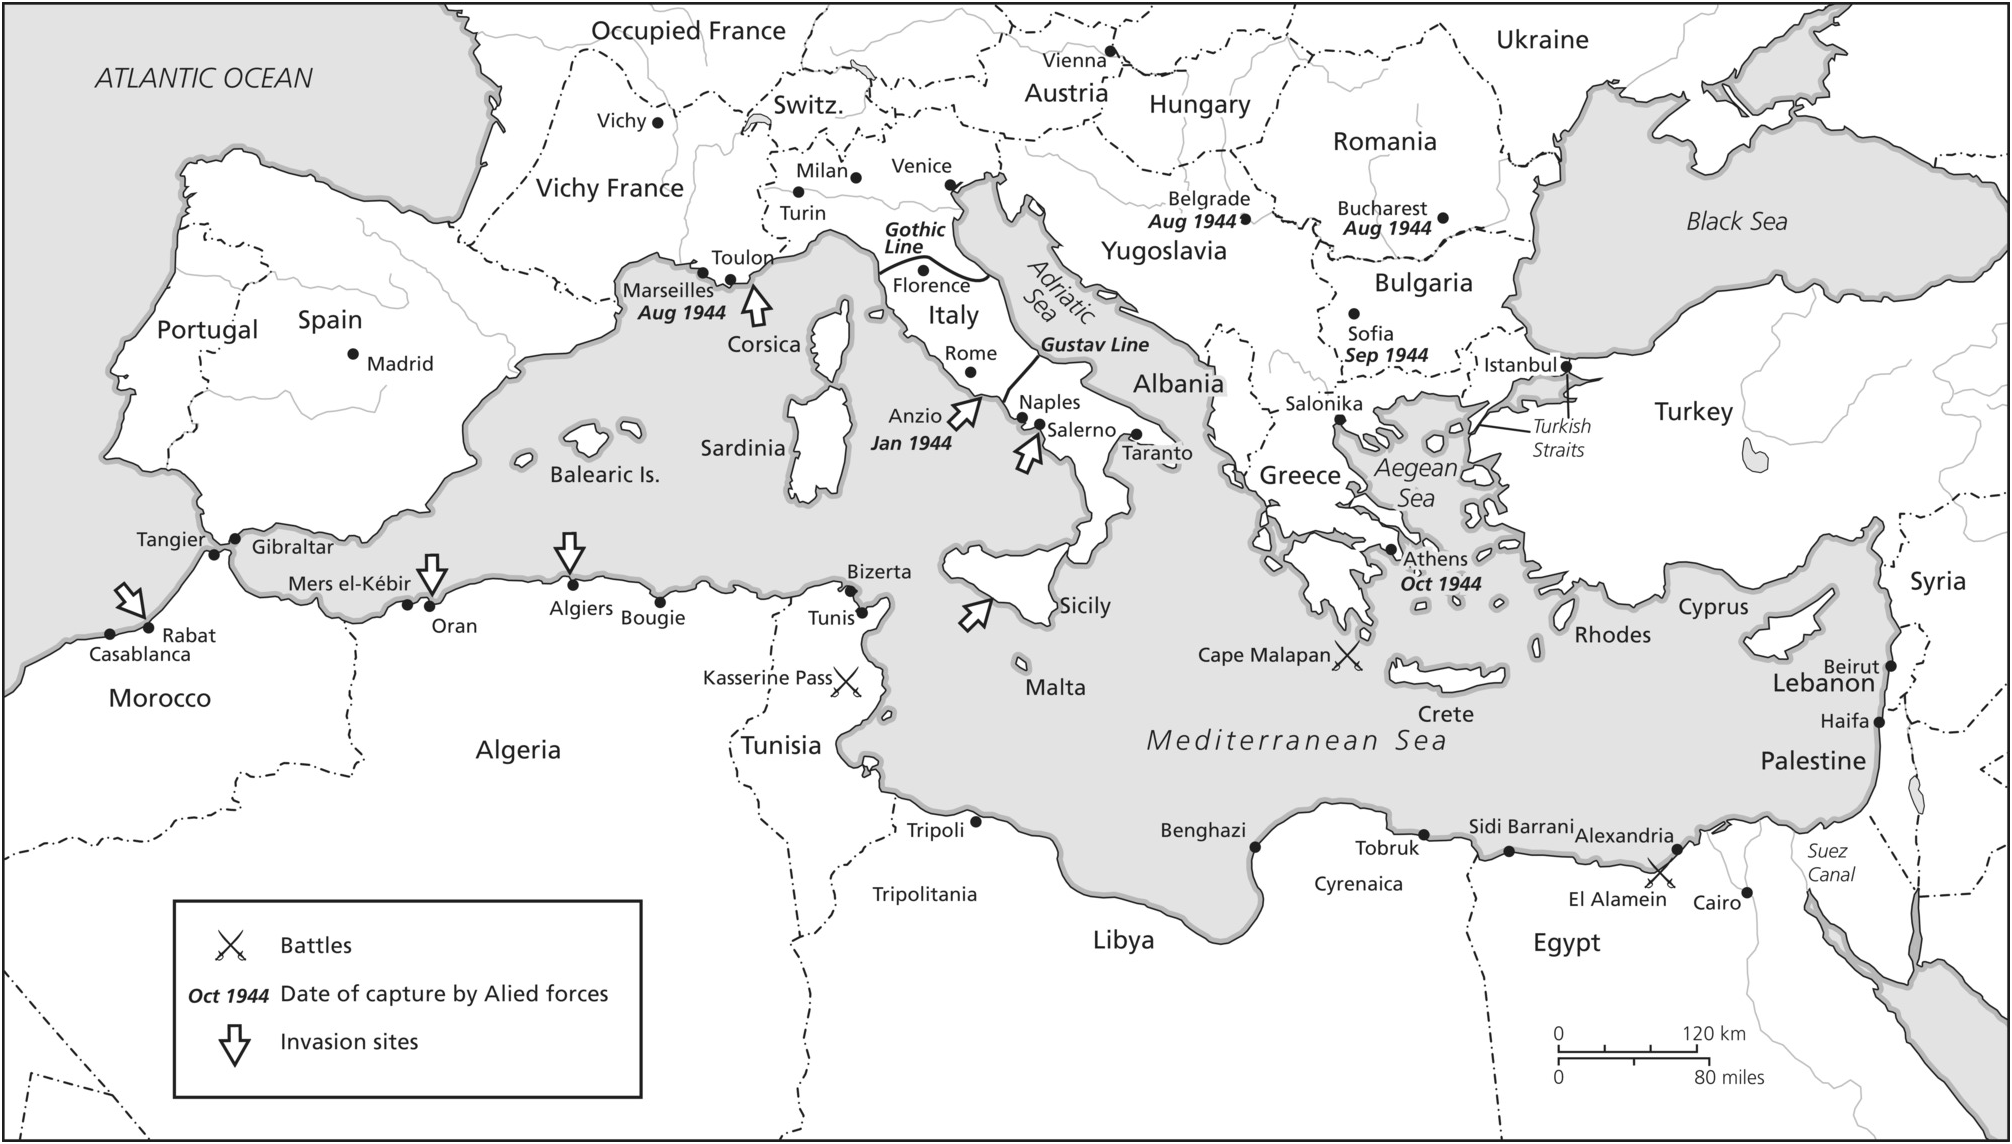 Map of WWII - Mediterranean Region 1940